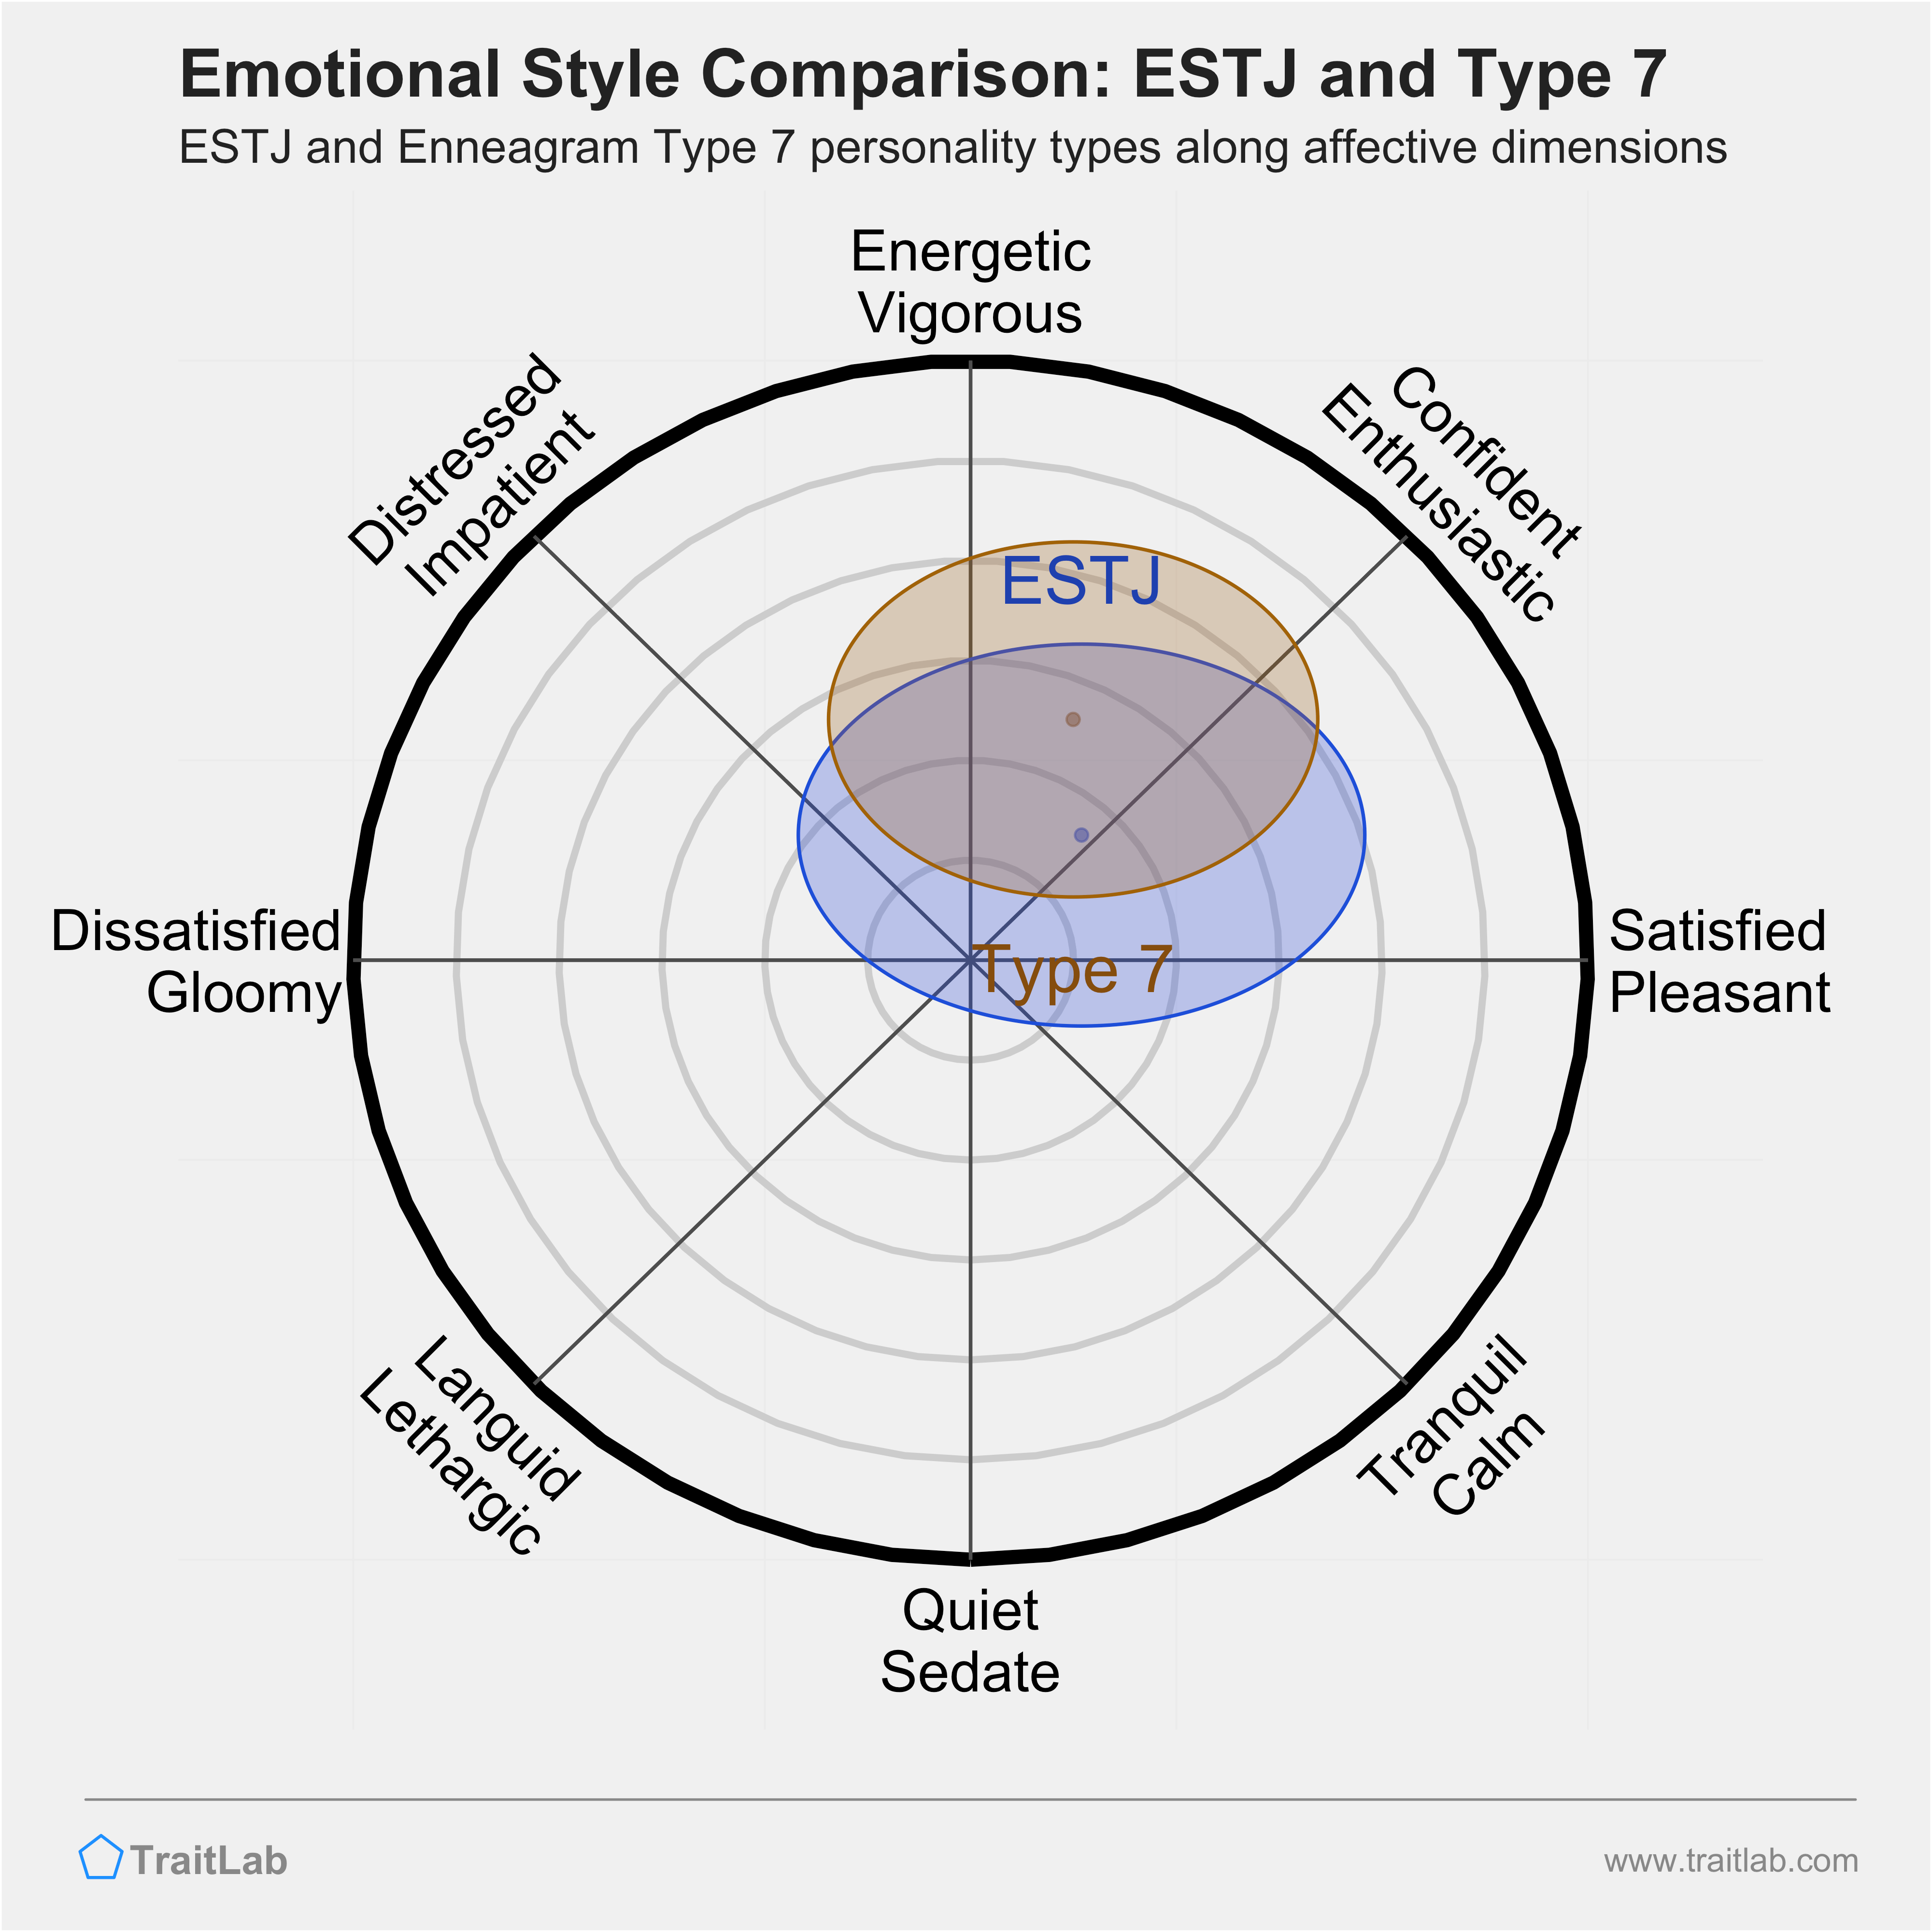 ESTJ and Type 7 comparison across emotional (affective) dimensions